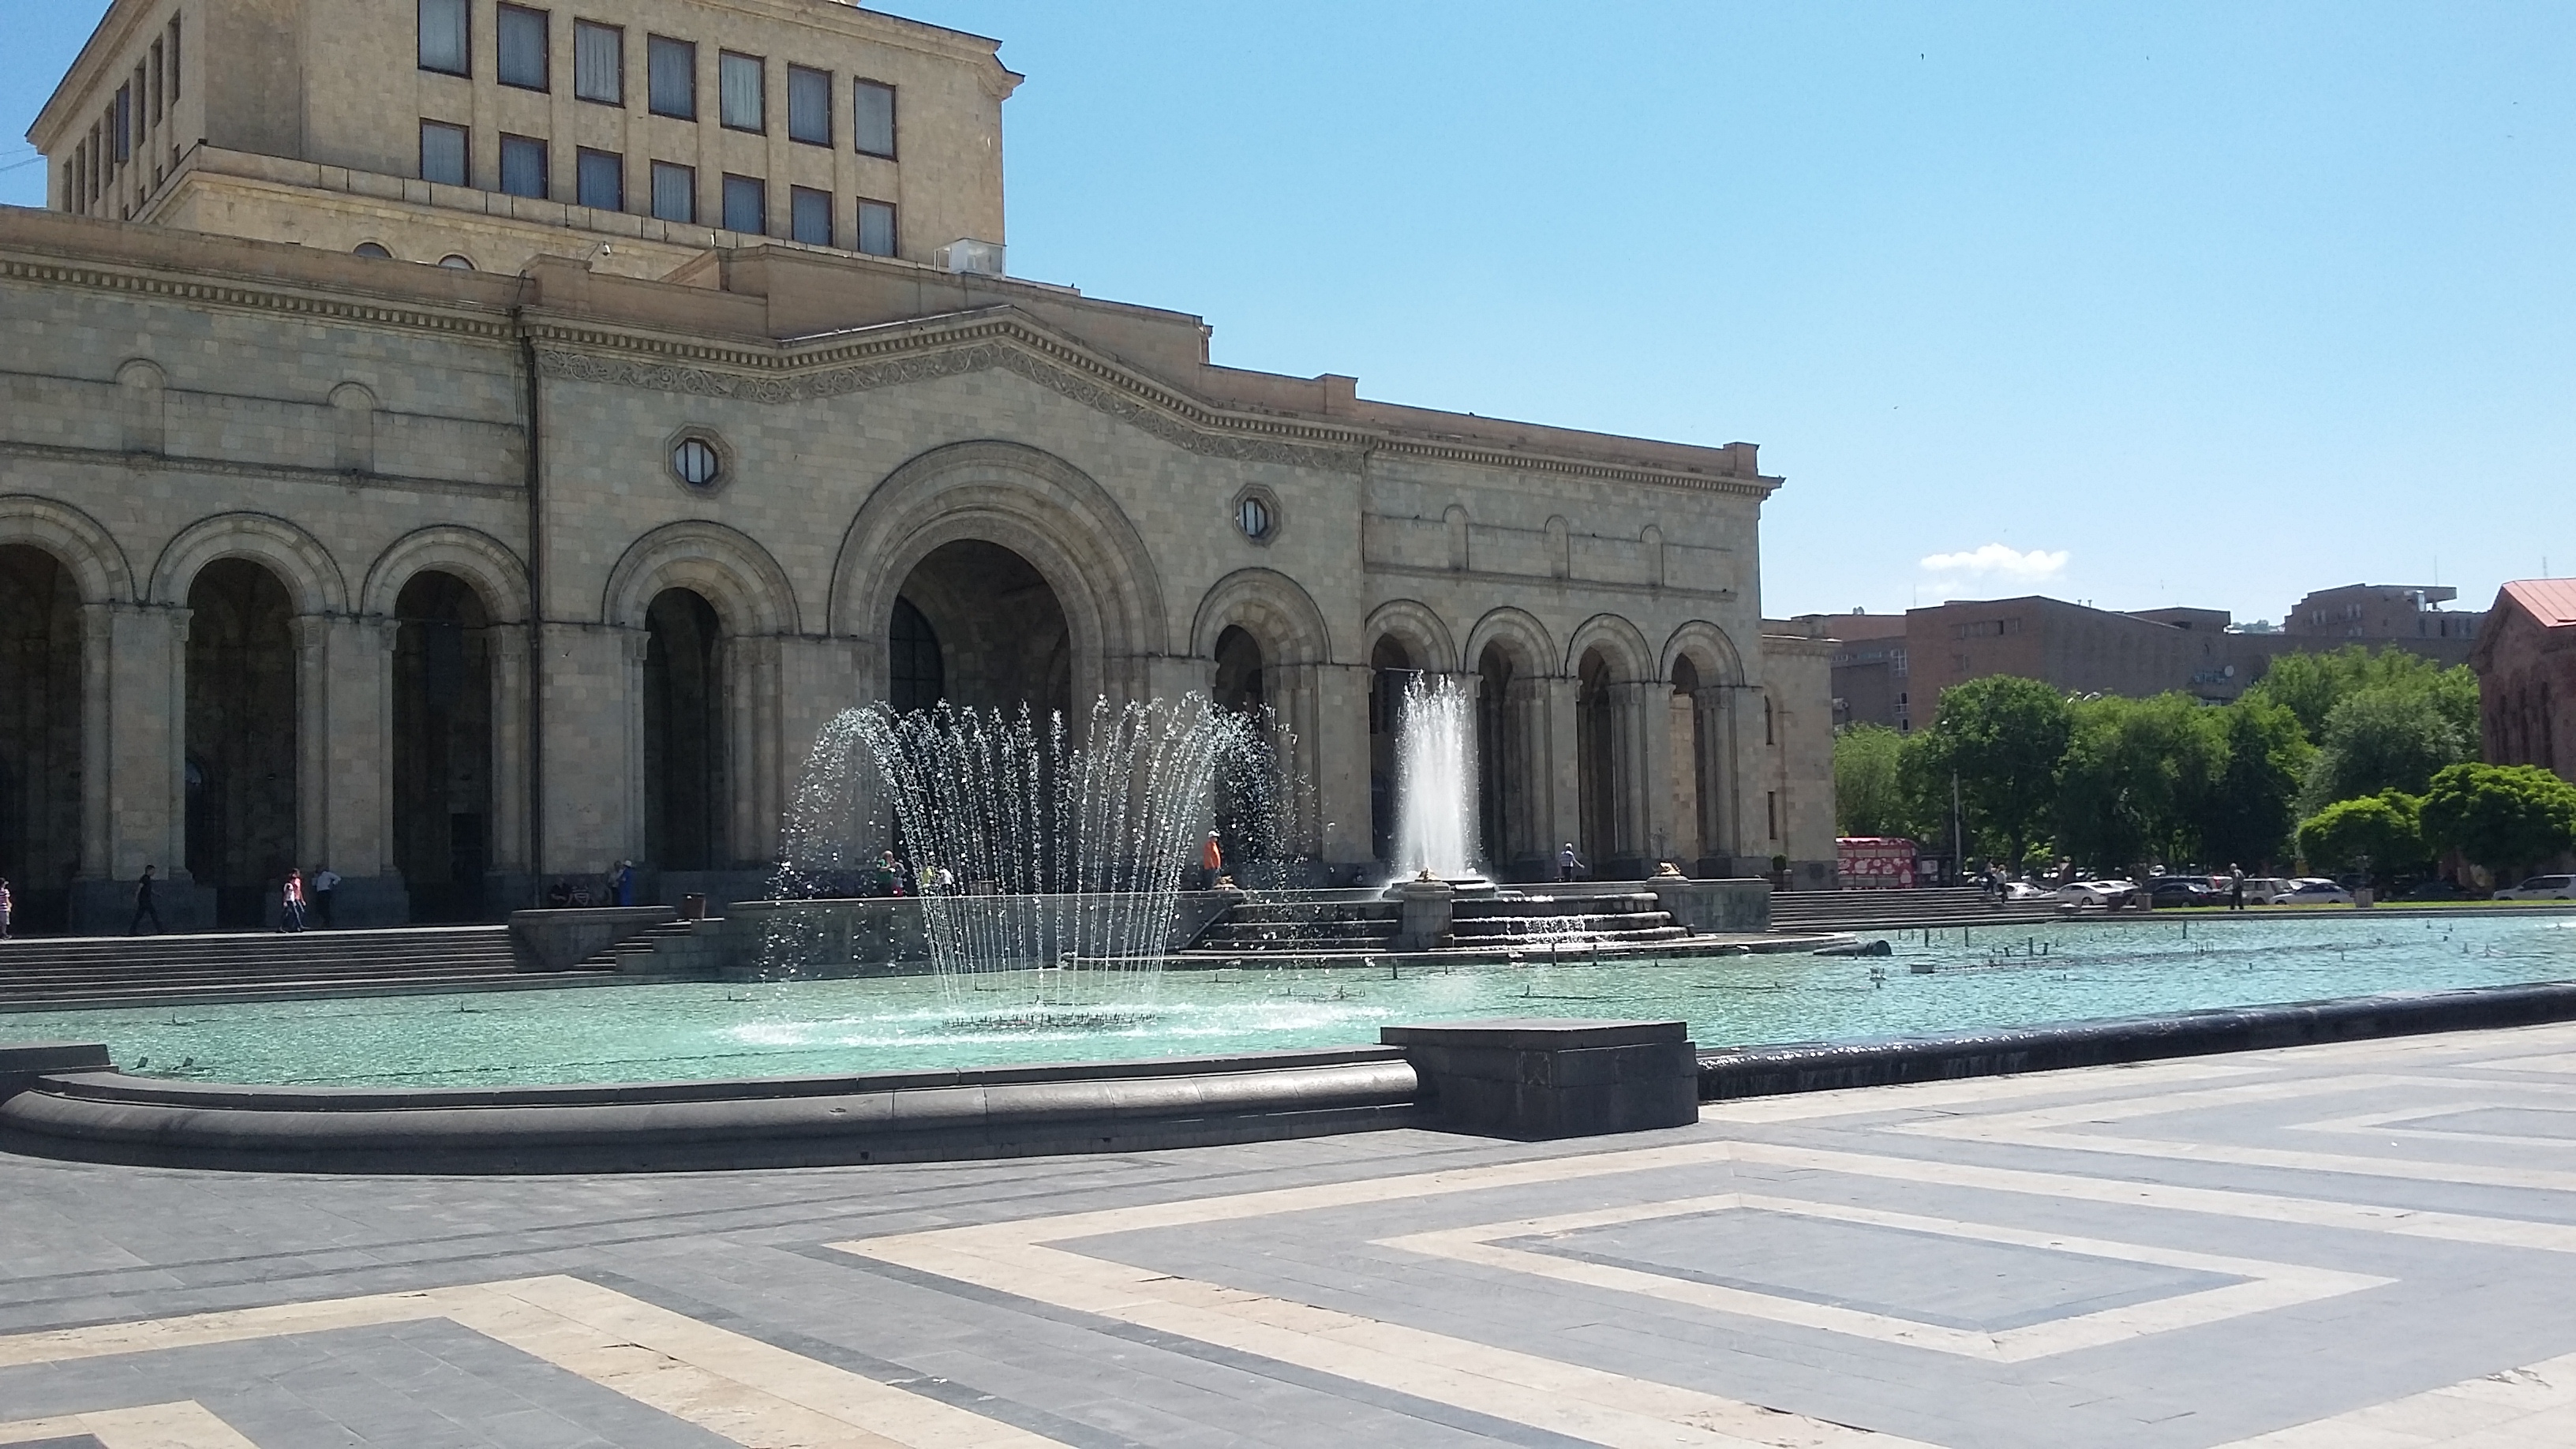 Победа ереван. Площадь Республики Ереван. Площадь свободы Ереван. Ереван фонтаны на площади Республики. Армения Ереван площадь Республики.